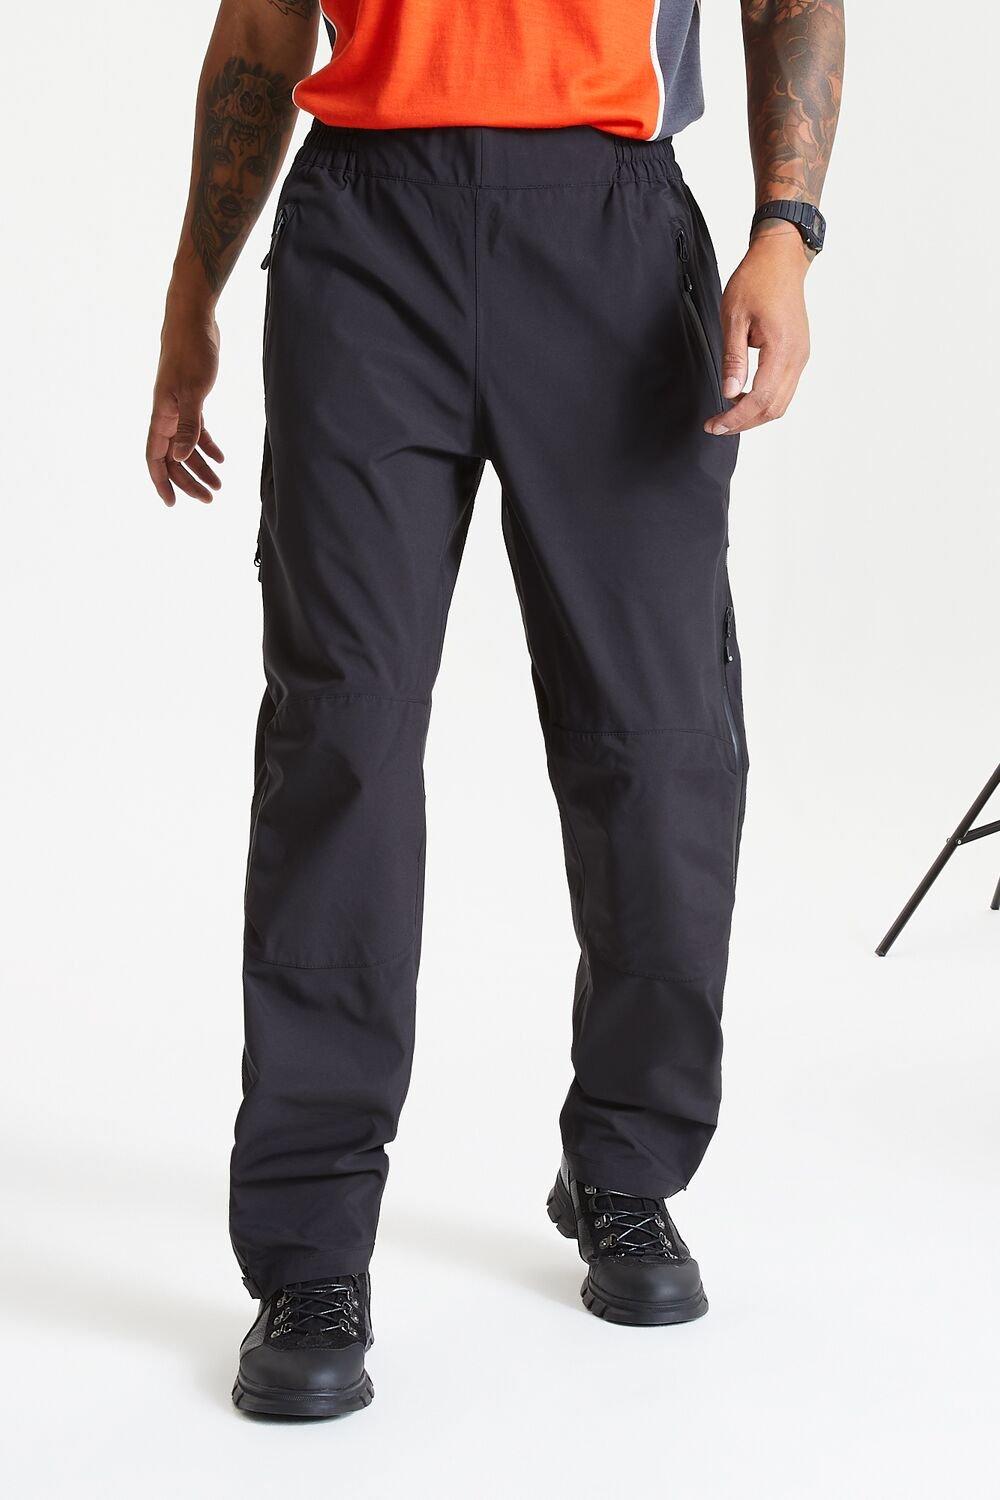 Походные брюки Адриот II Dare 2b, черный